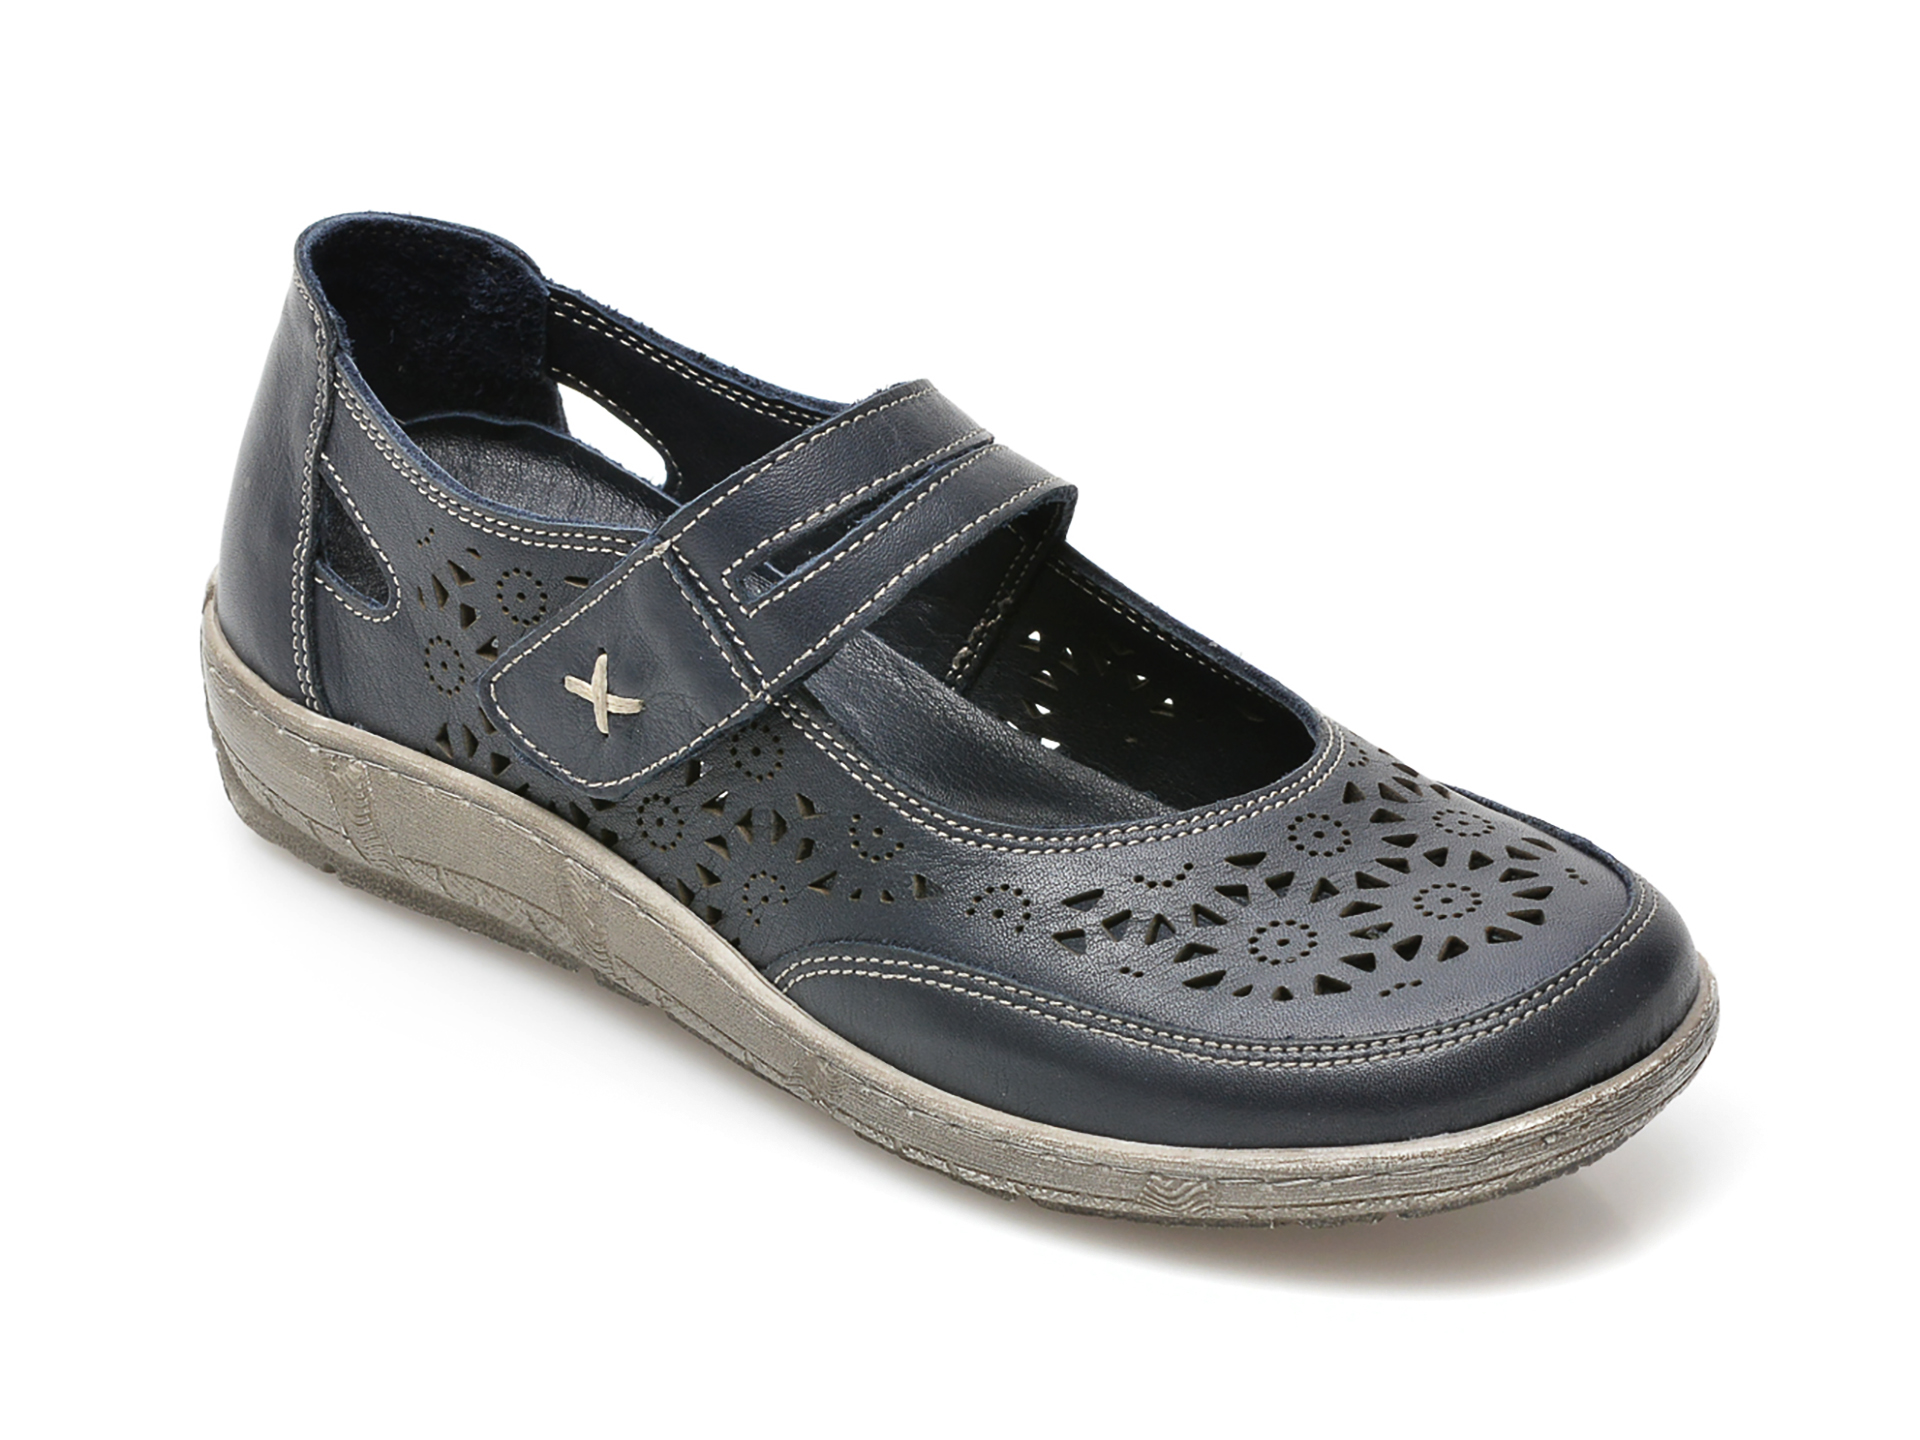 Pantofi PASS COLLECTION bleumarin, 62050, din piele naturala